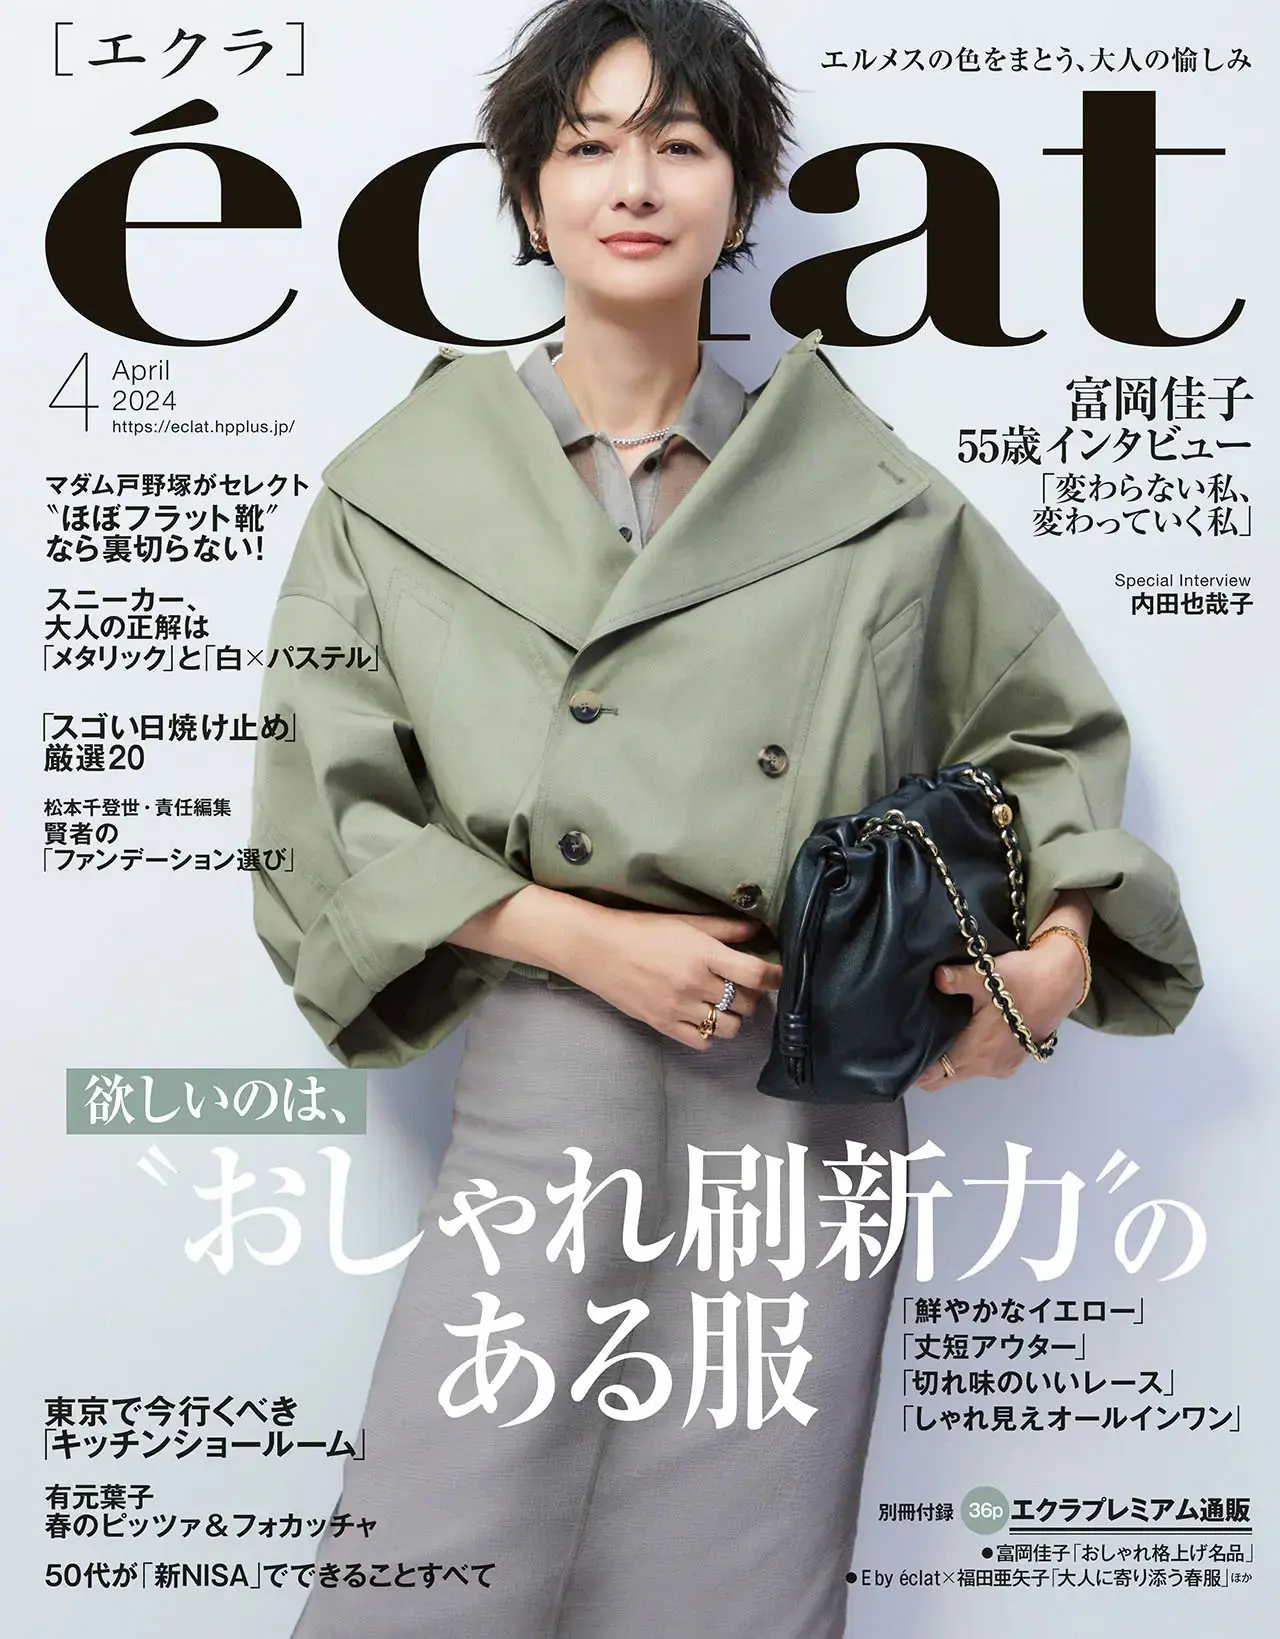 エクラ４月号表紙。カバーモデルは富岡佳子さん。